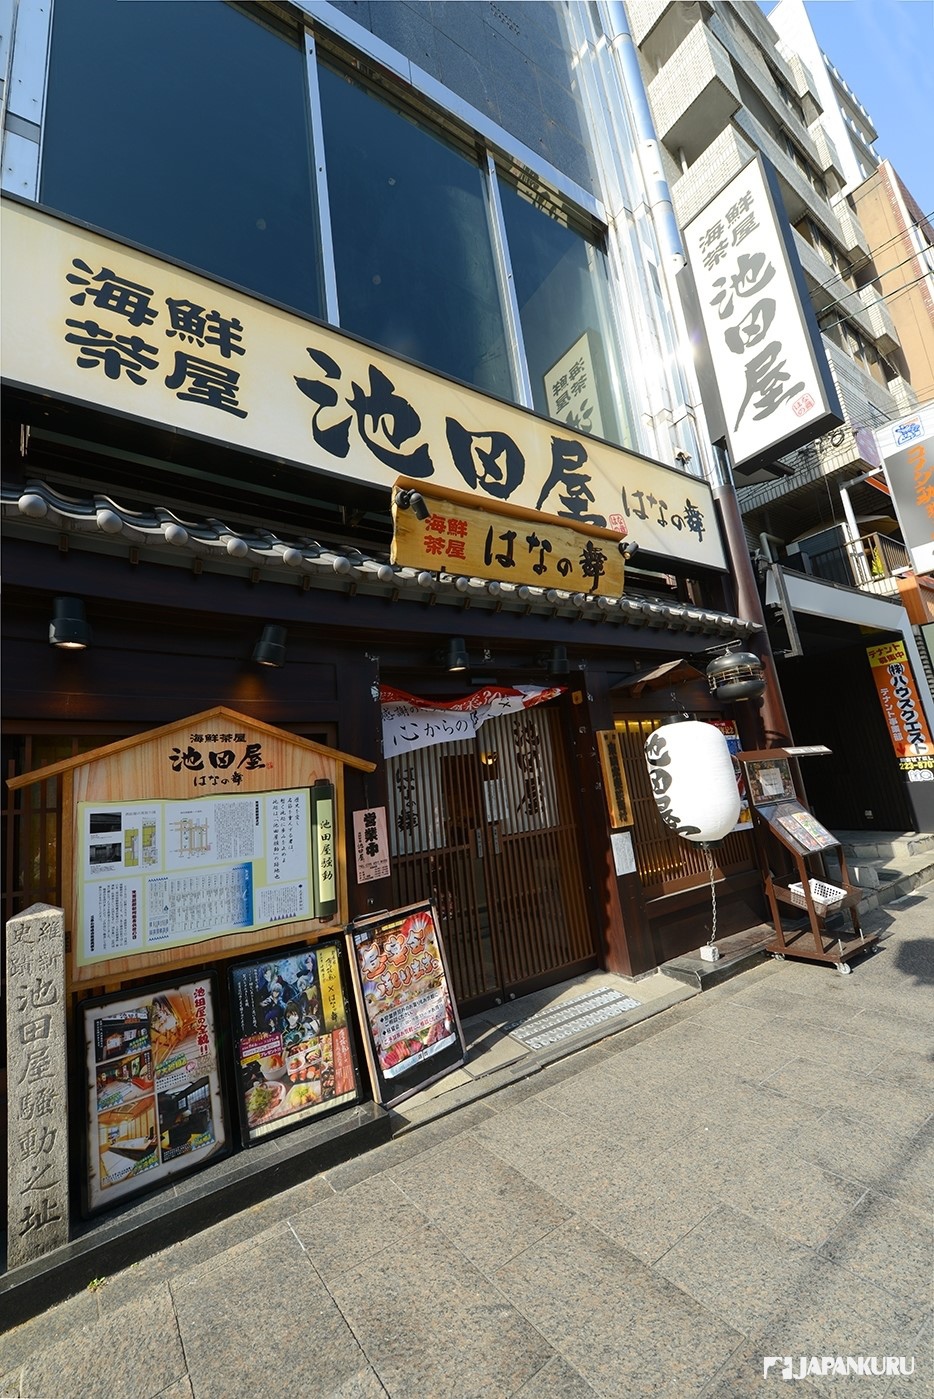 既能品味美食又體驗歷史的京都特色主題居酒屋 Japankuru Japankuru 最道地的日本旅遊資訊網站